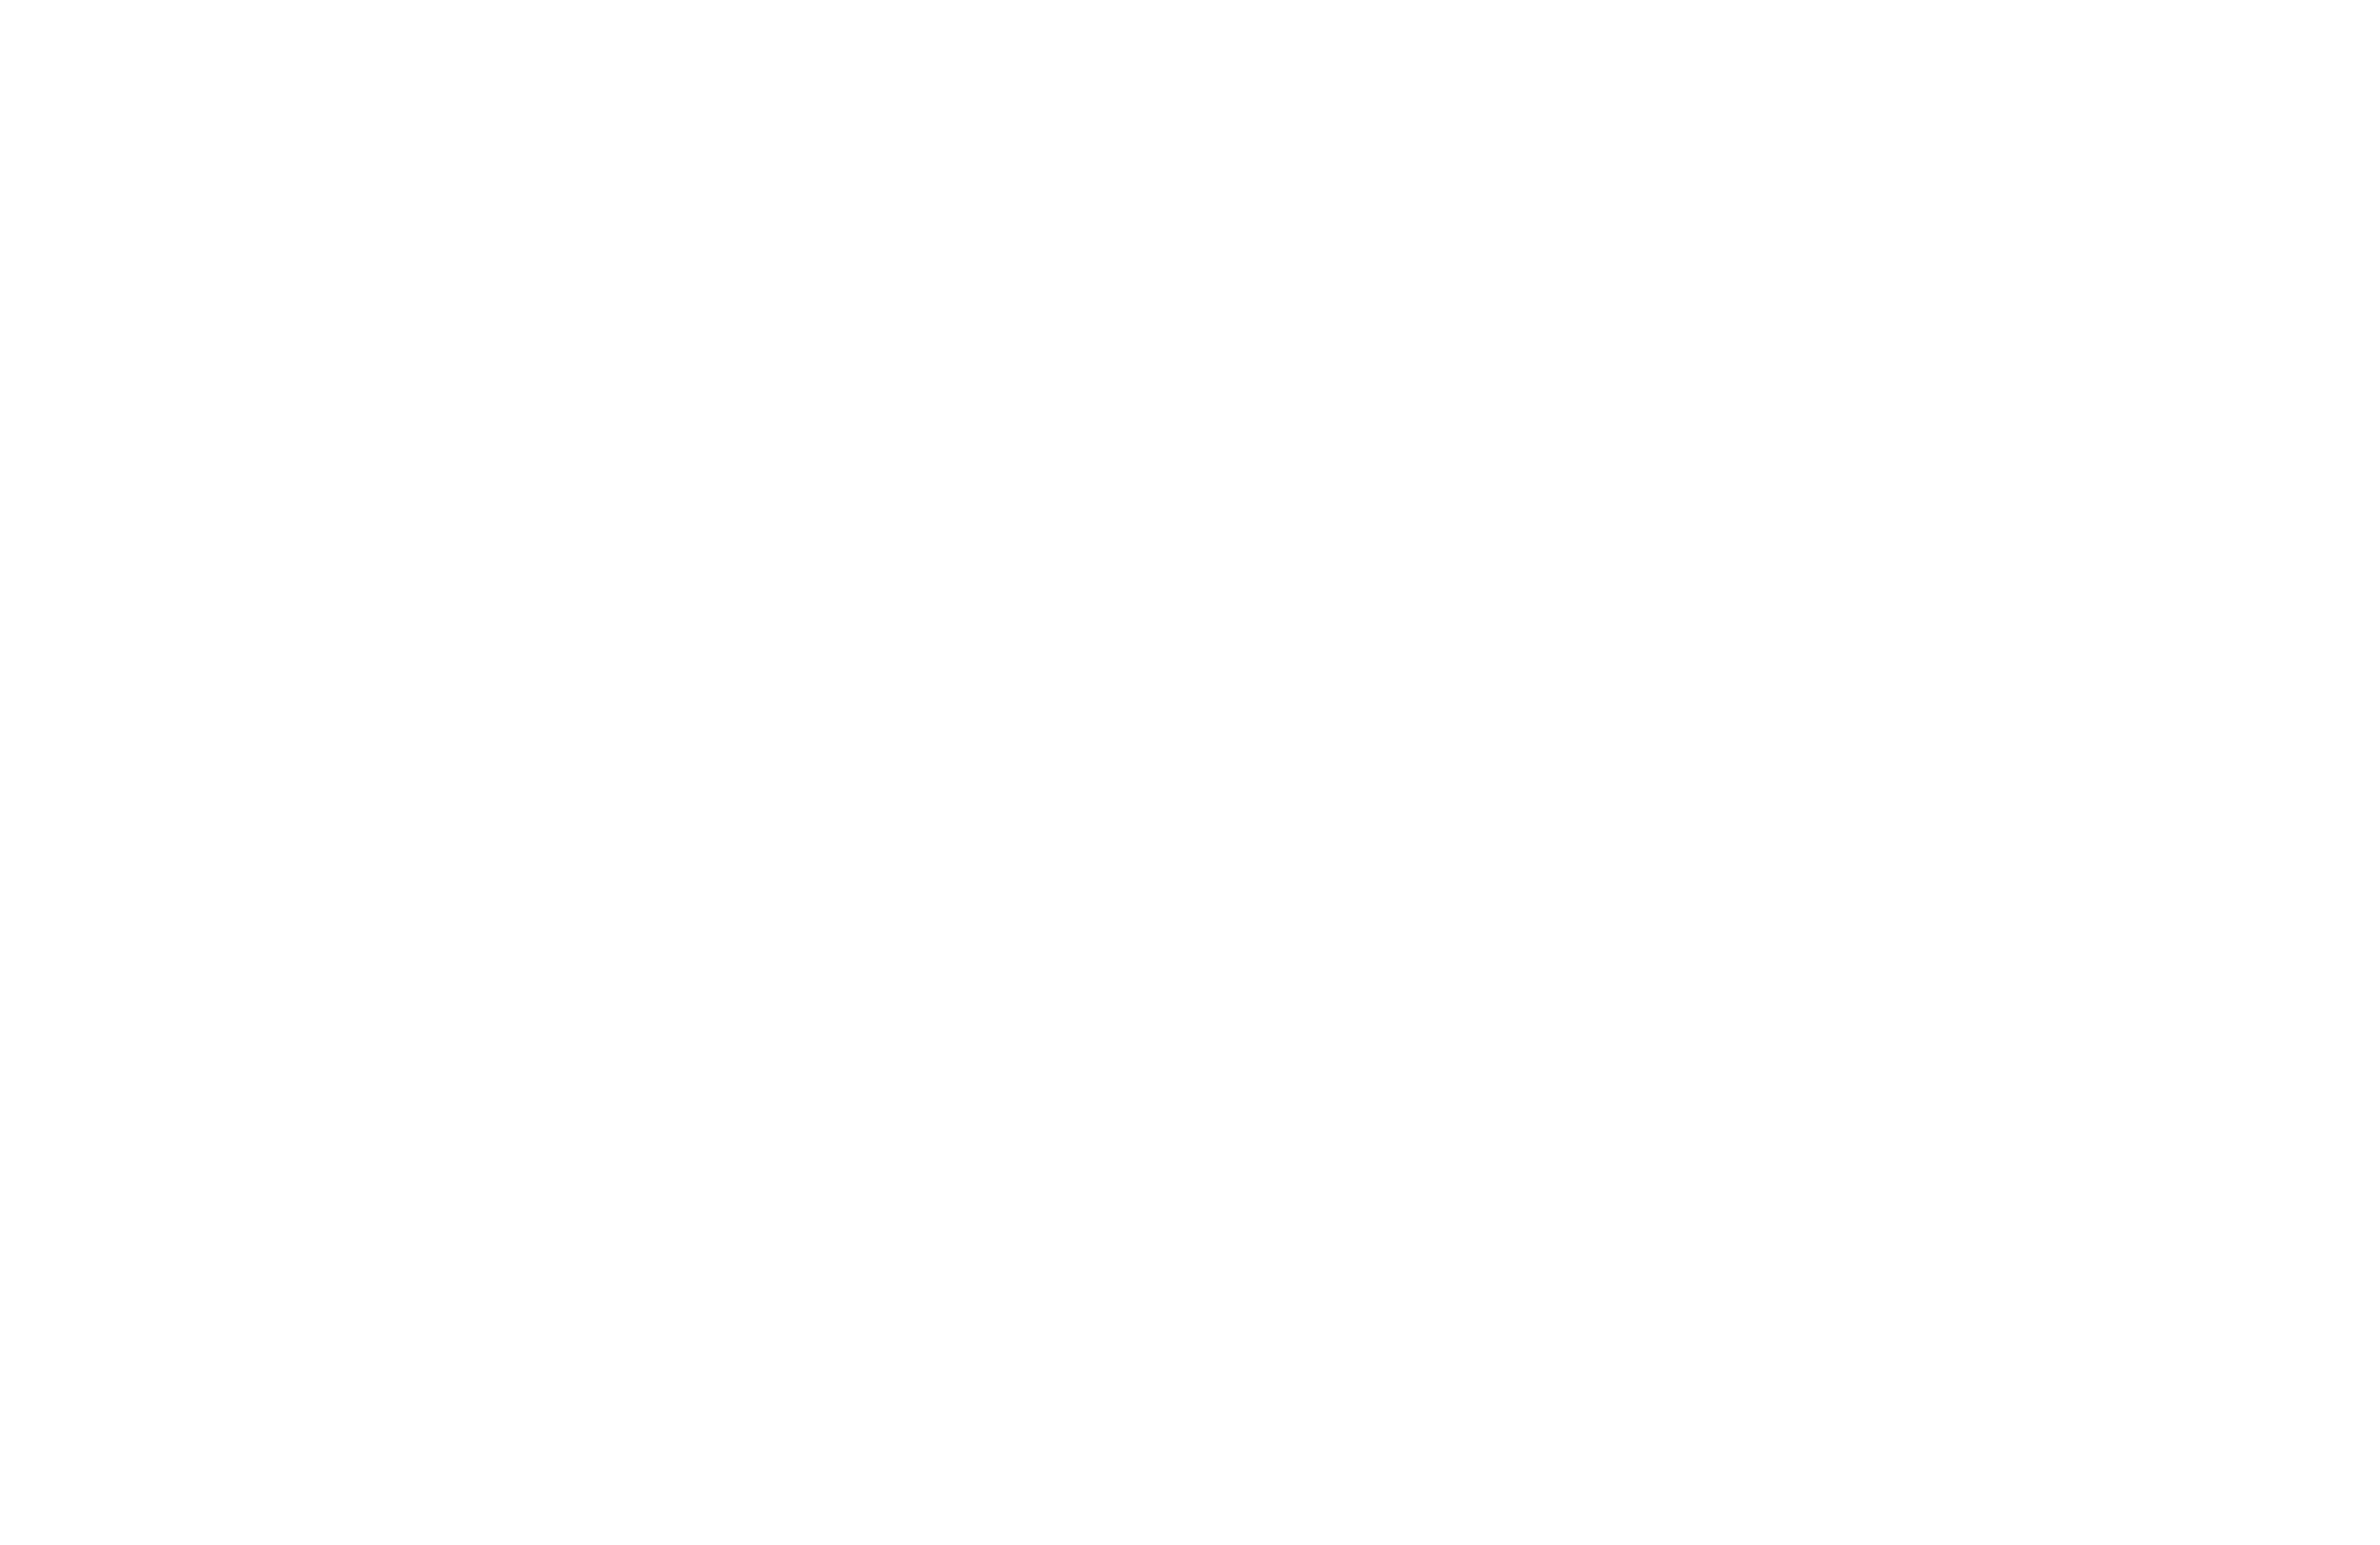 Sierra midwifery